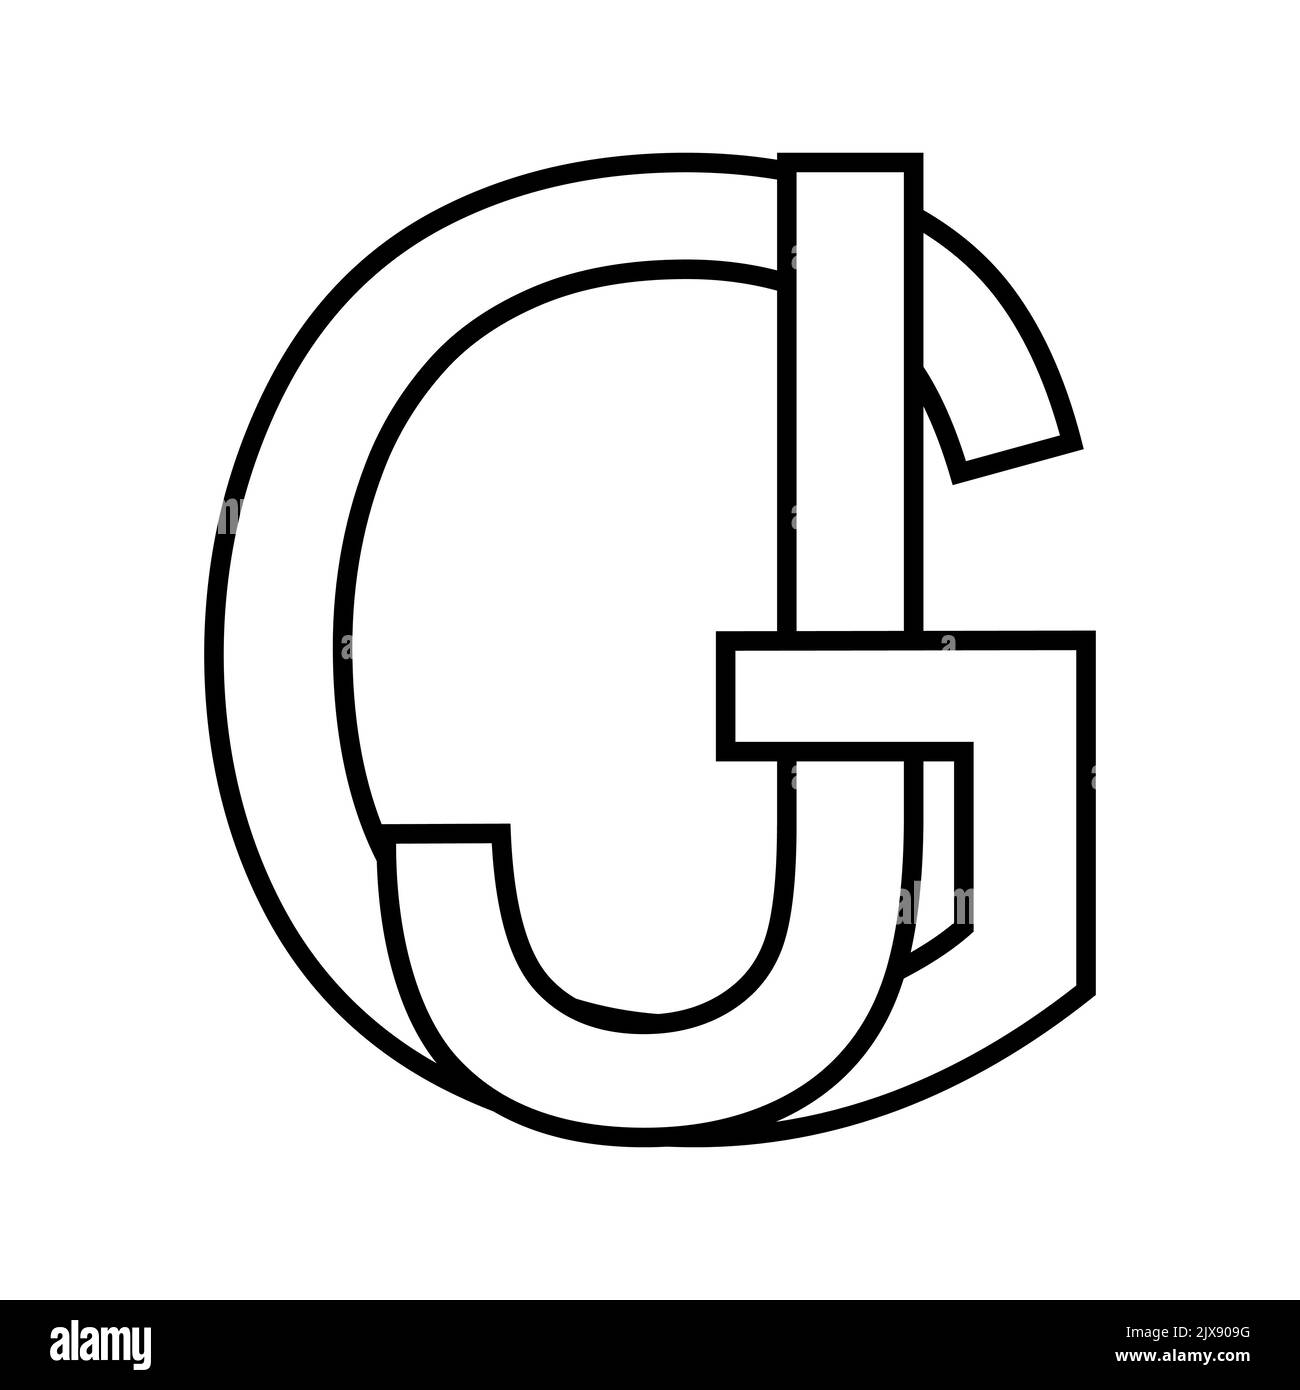 Logotipo signo gj jg icono nft letras entrelazadas g j Ilustración del Vector